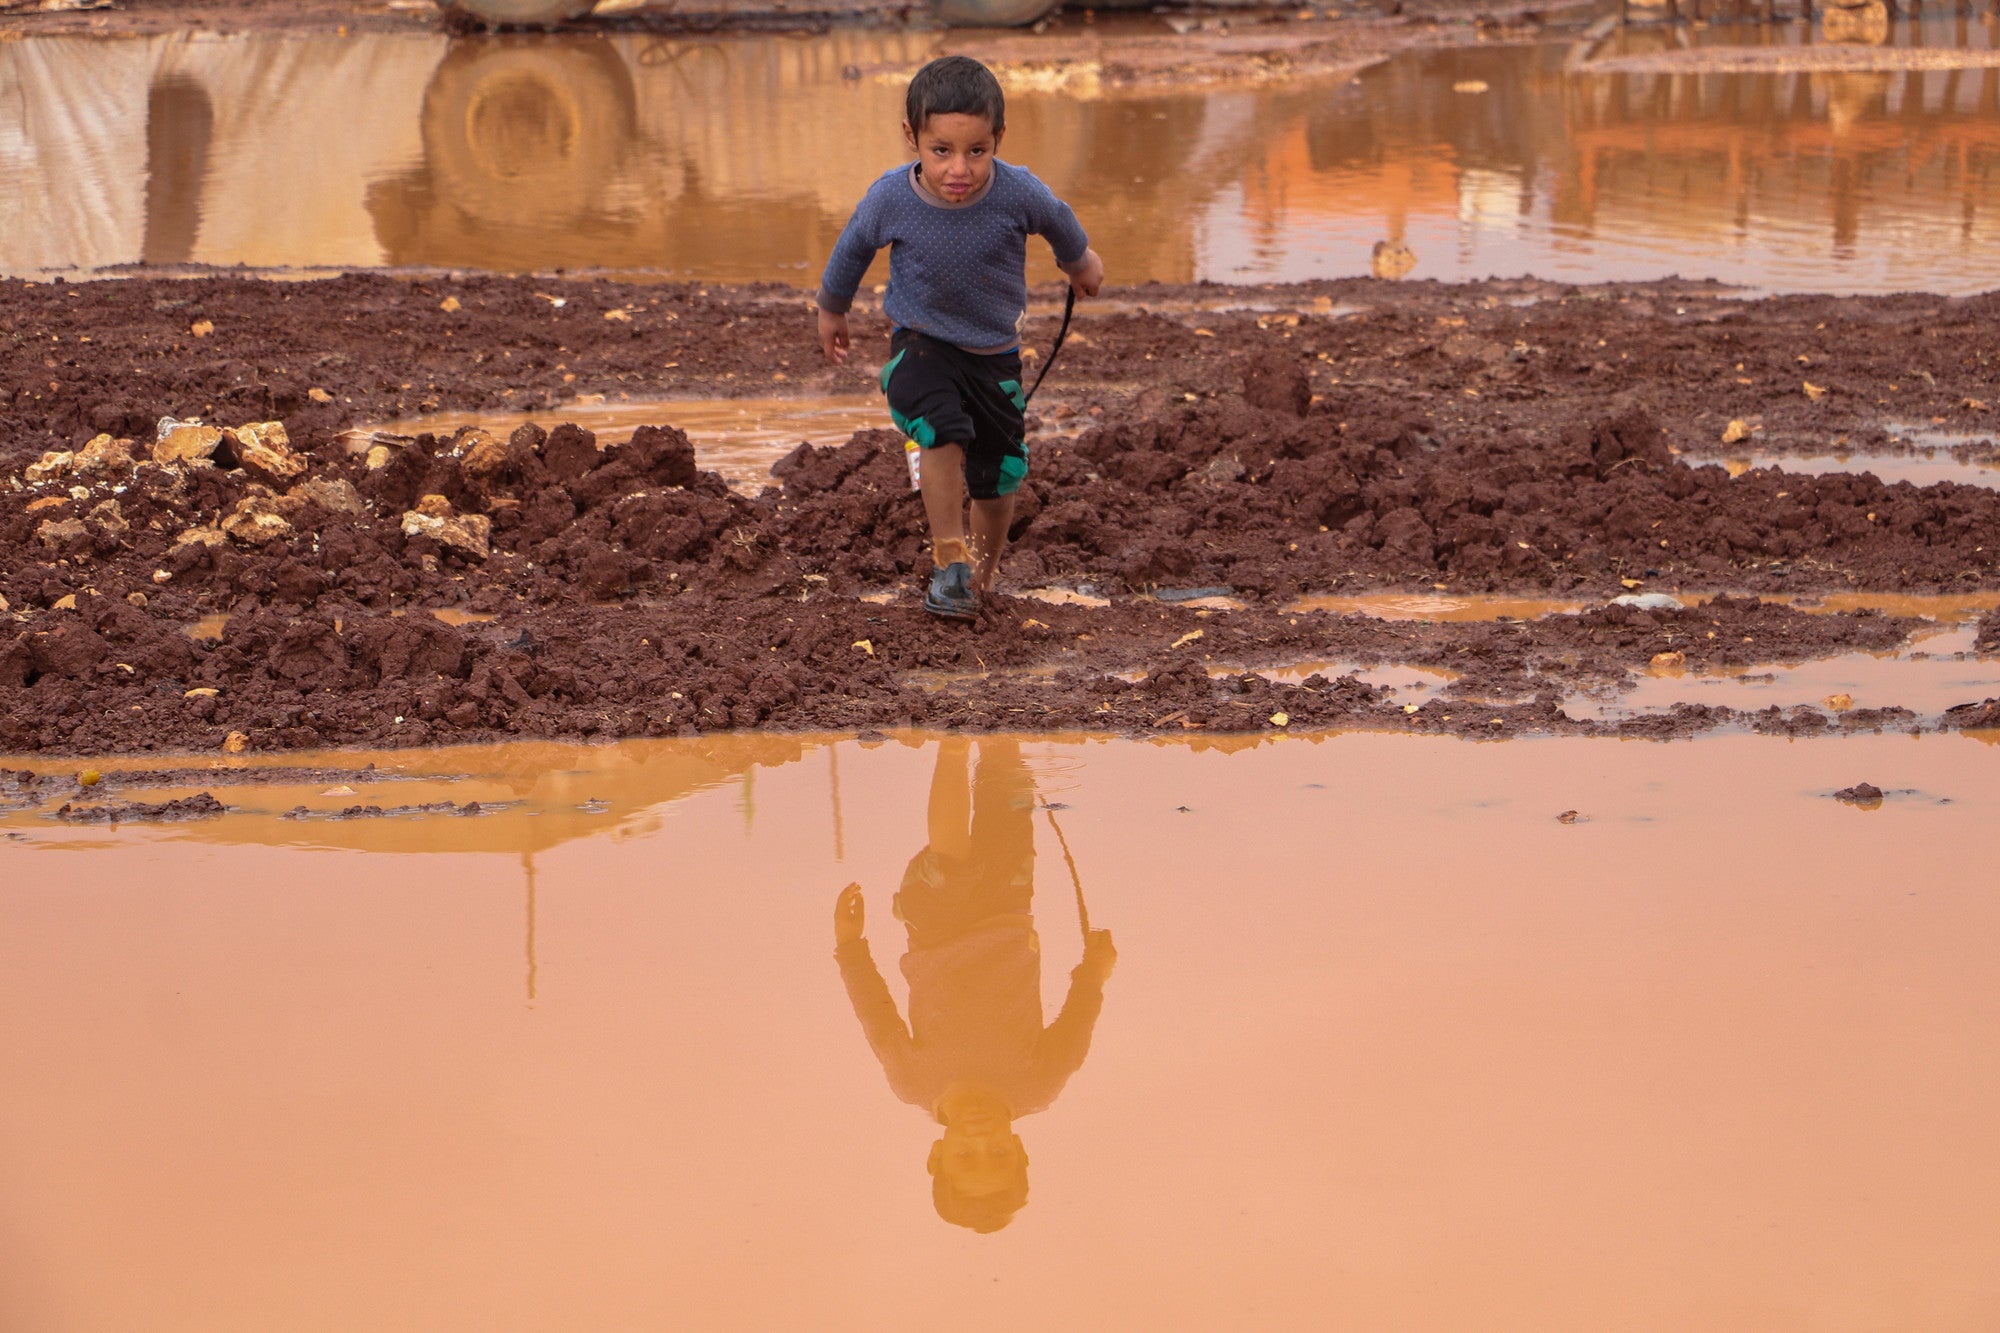 Un petit garçon dans un camp inondé en Syrie court vers une grande flaque d'eau.